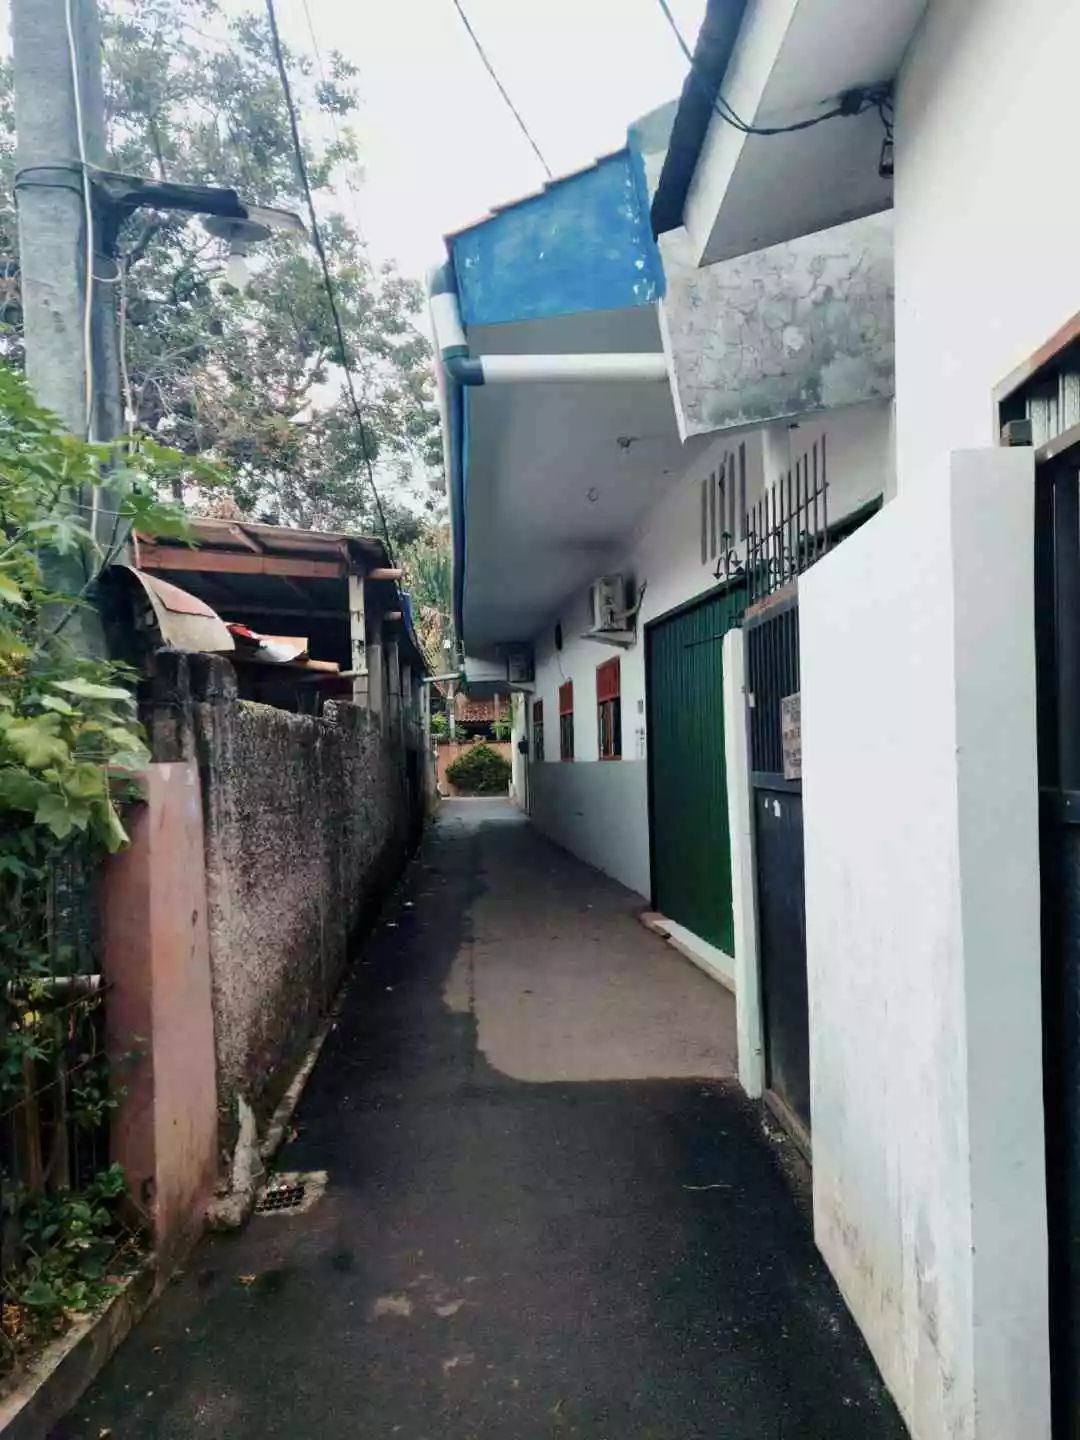 Jatiwarna, Pondokmelati, Kobek: Memasang atap permanen dalam gang apakah perlu izin? 